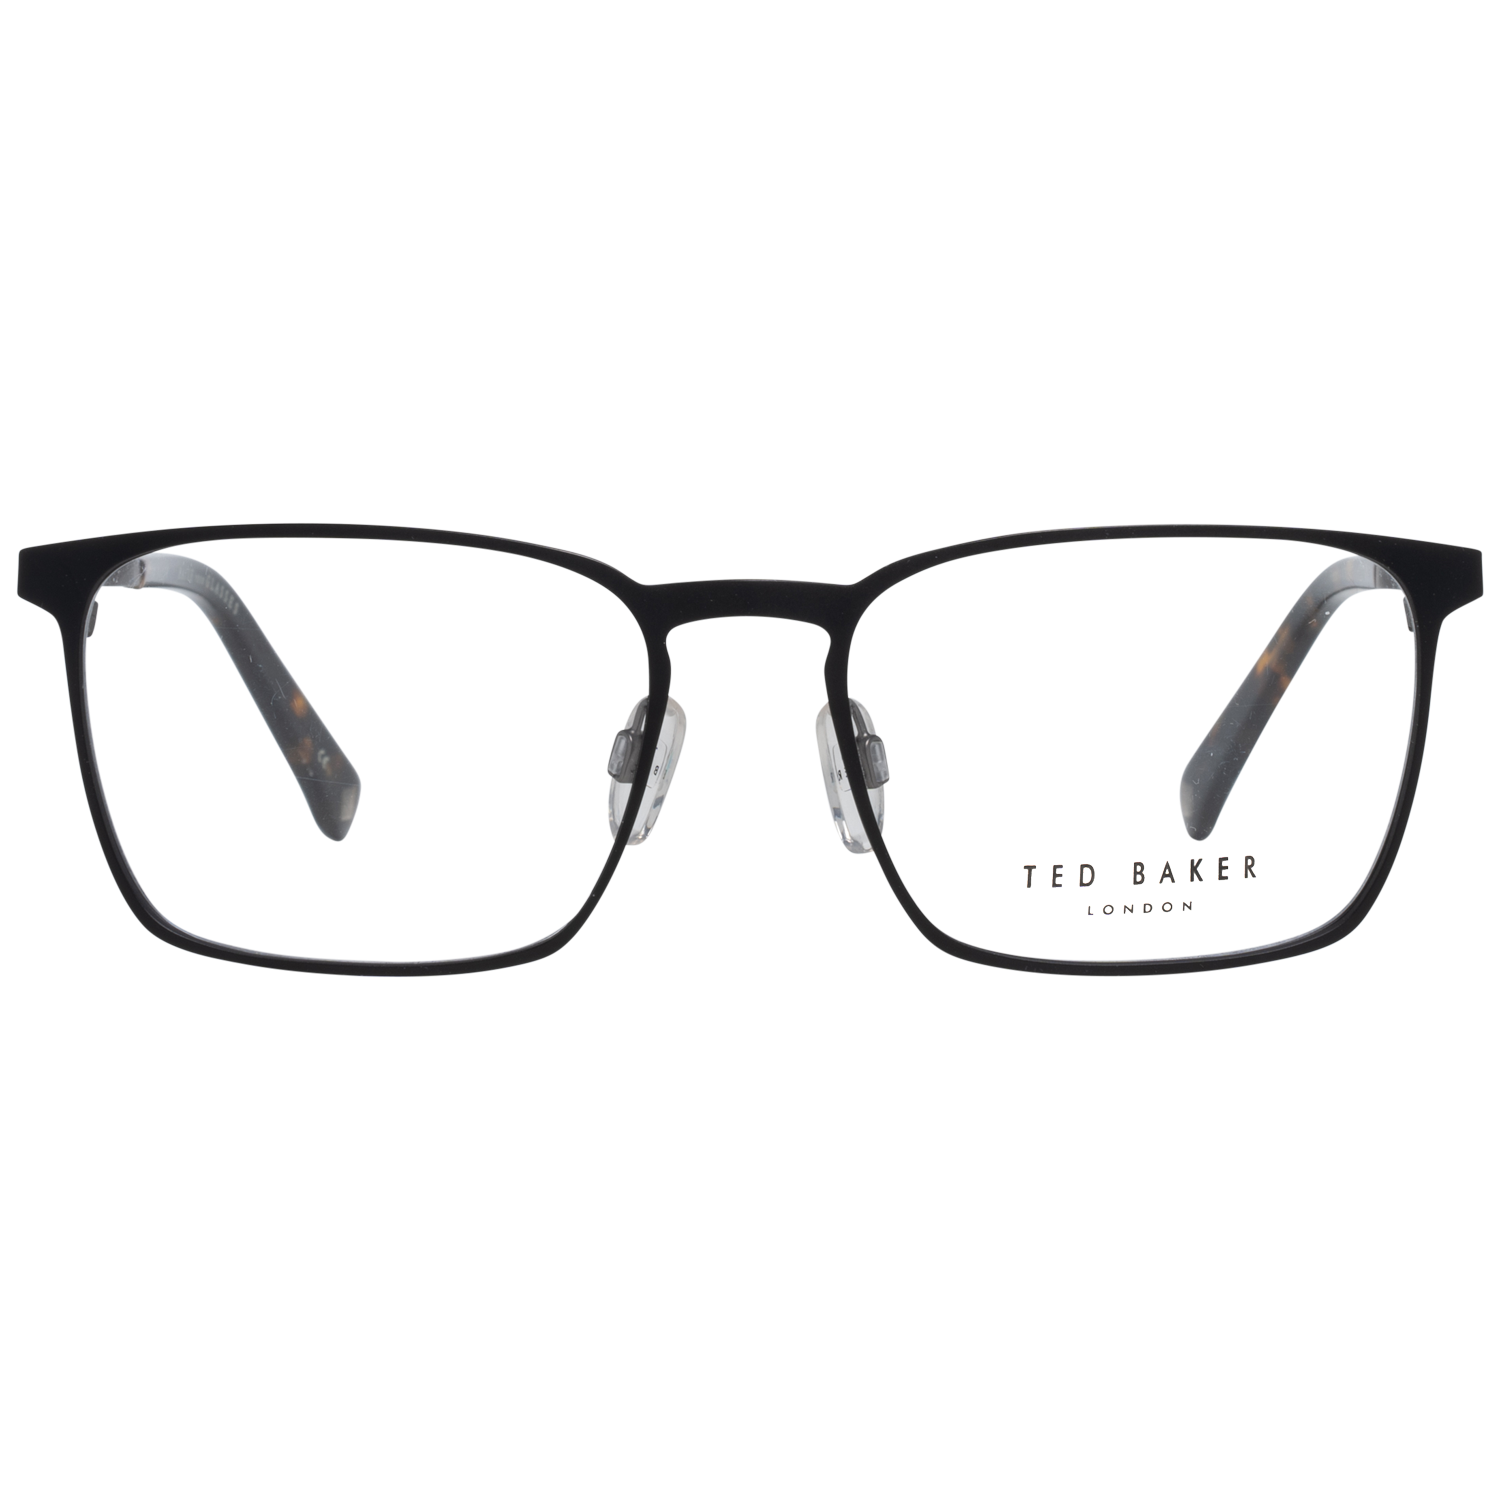 Ted Baker Frames Ted Baker Optical Frame Prescription Glasses TB4270 009 53 Patton Eyeglasses Eyewear UK USA Australia 